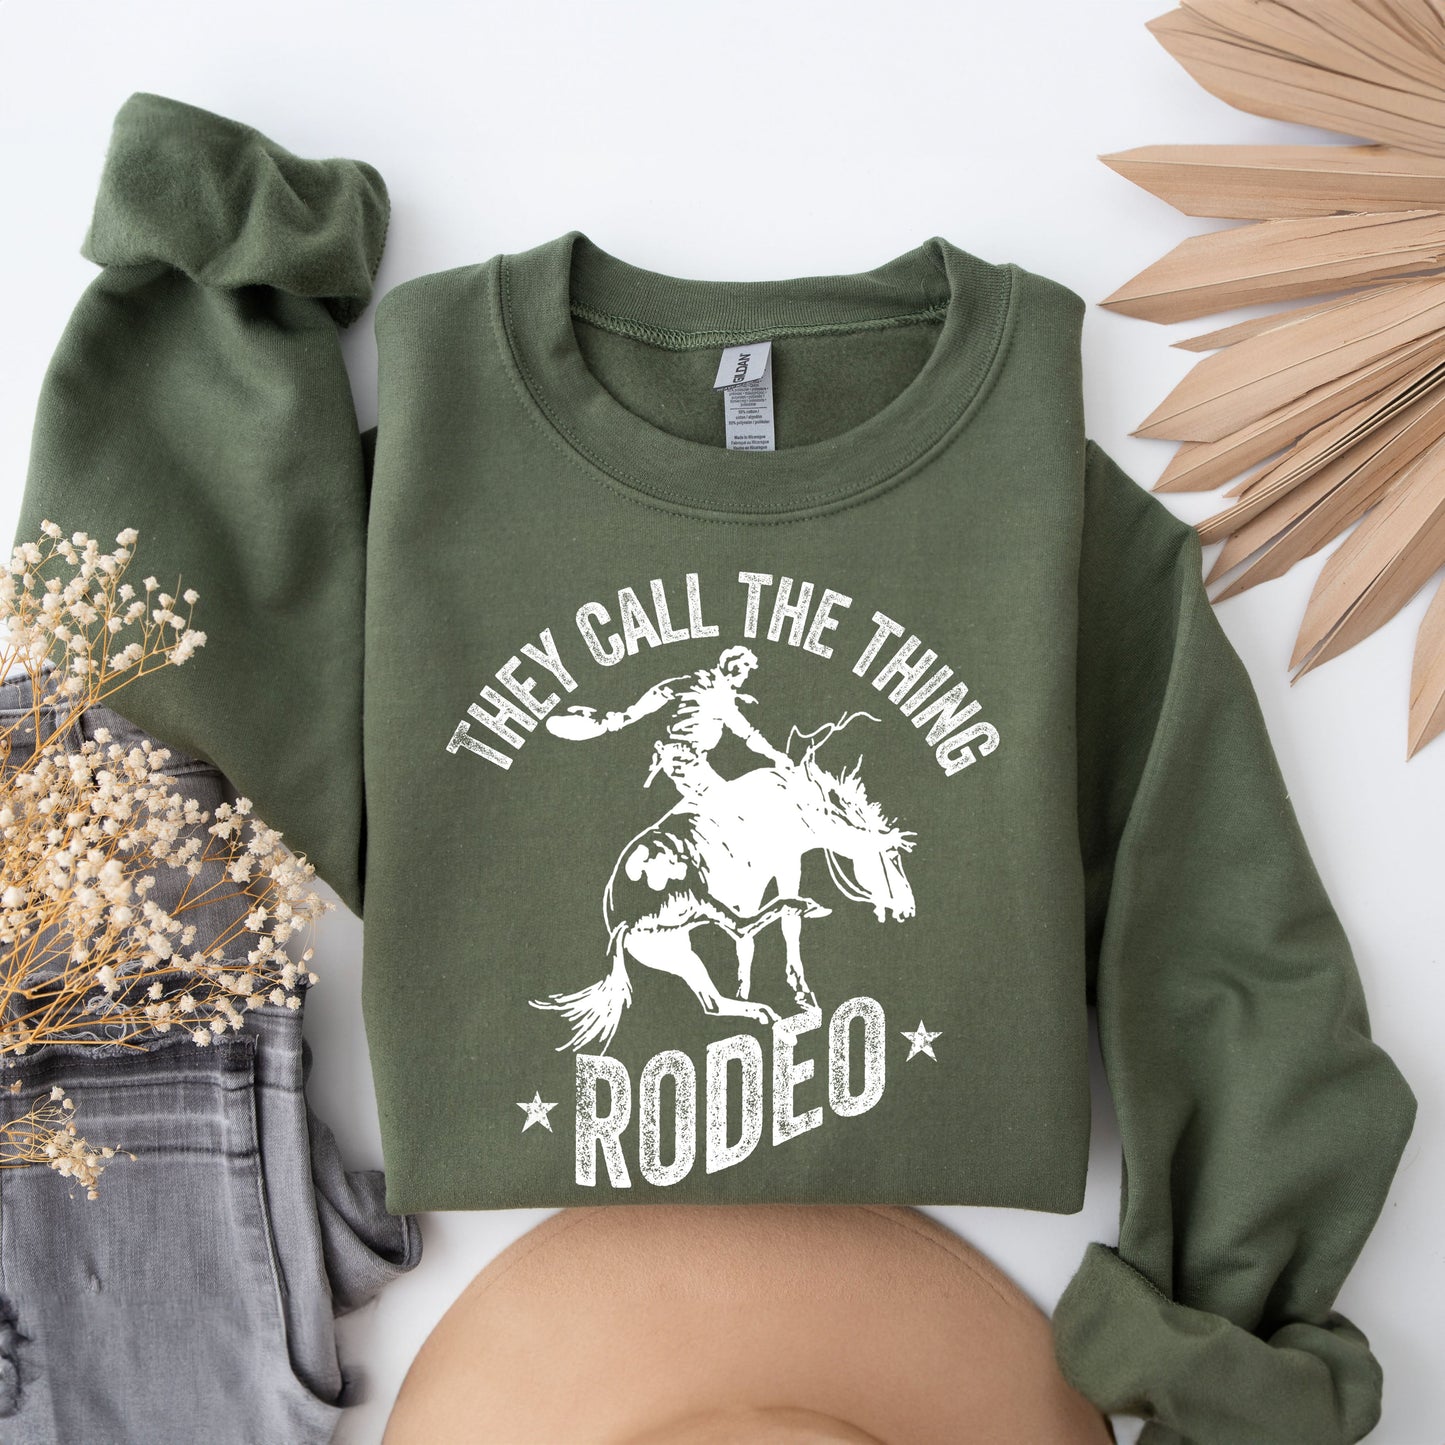 Call The Thing Rodeo Stars | Sweatshirt